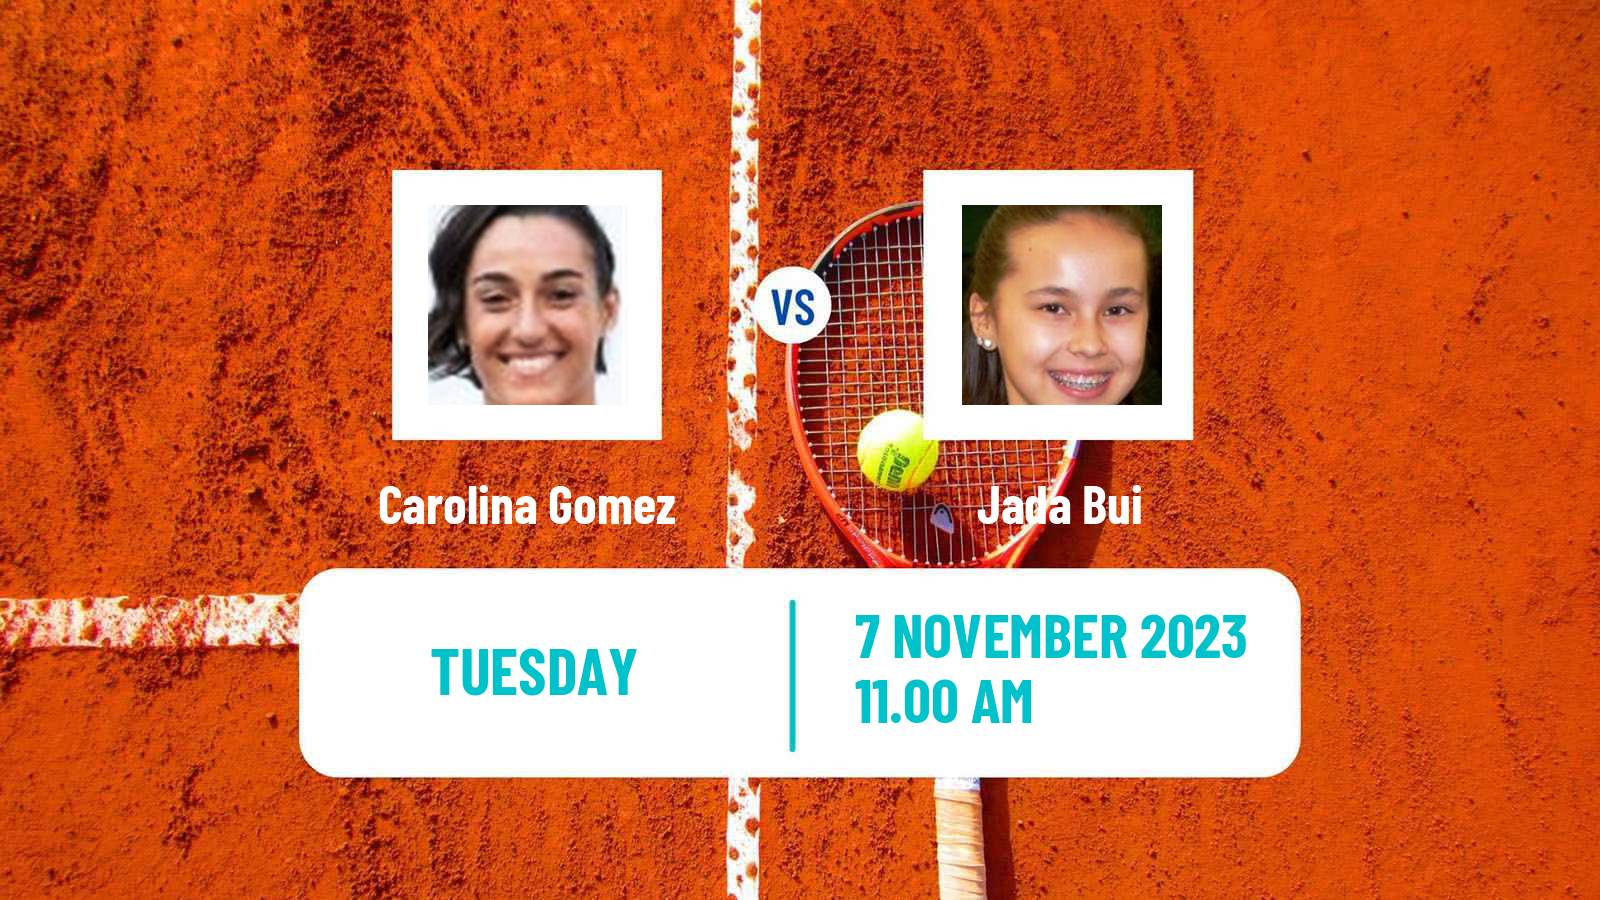 Tennis ITF W15 Champaign Il Women Carolina Gomez - Jada Bui